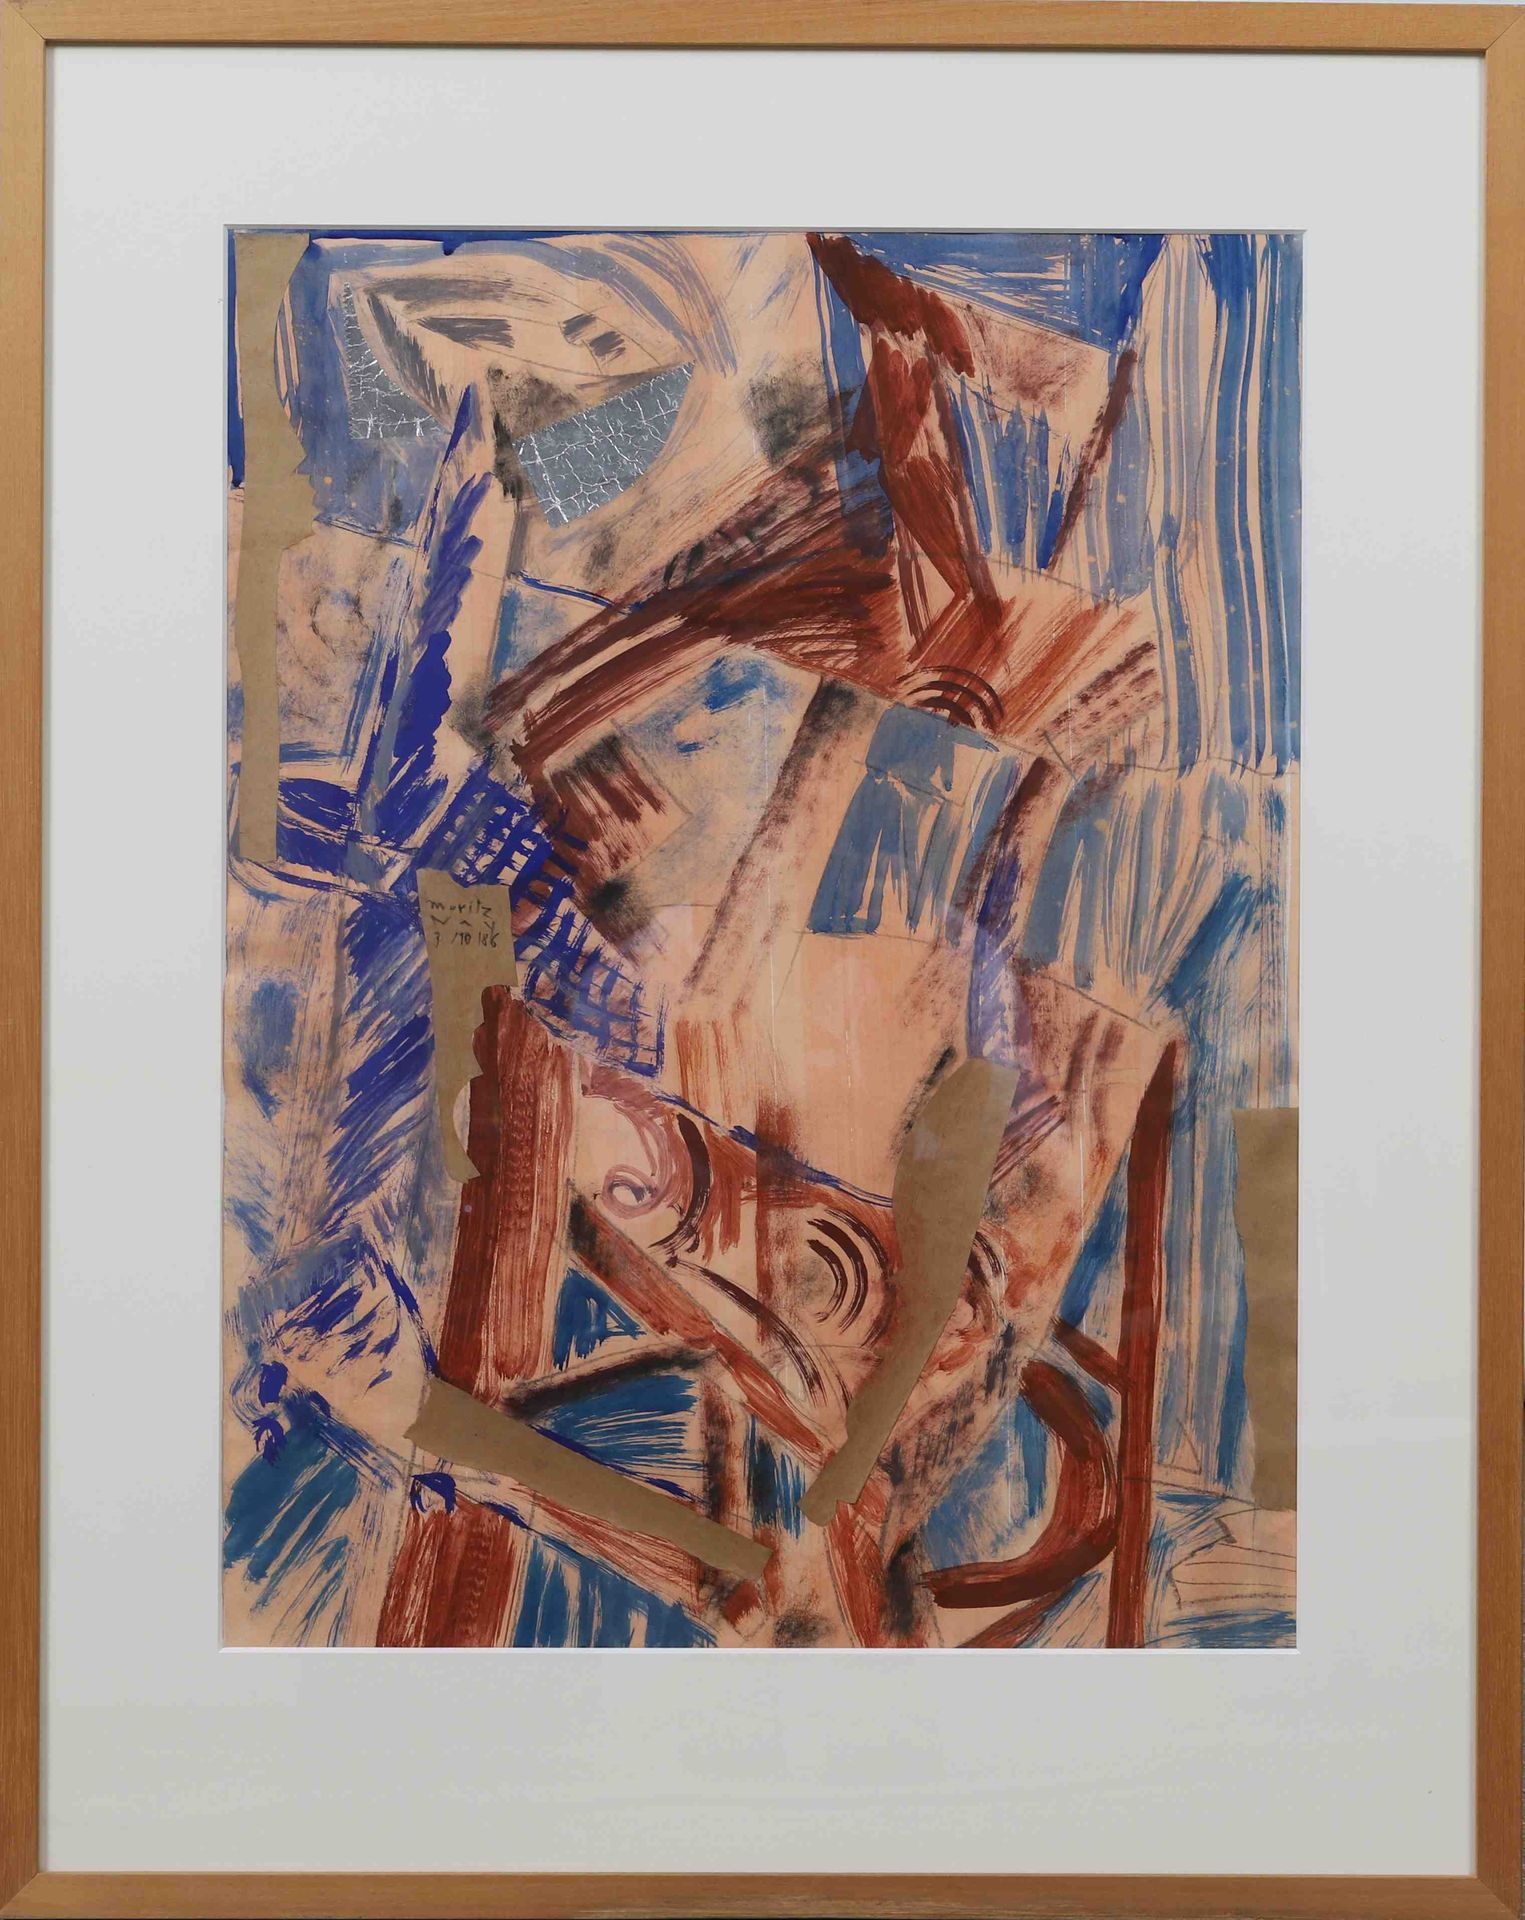 Null 莫里茨-内伊（生于1947年） 
来自卢森堡的画家 
纸上混合媒体，已签名并注明日期为1986年10月3日 
目测尺寸：高：61；宽：46厘米